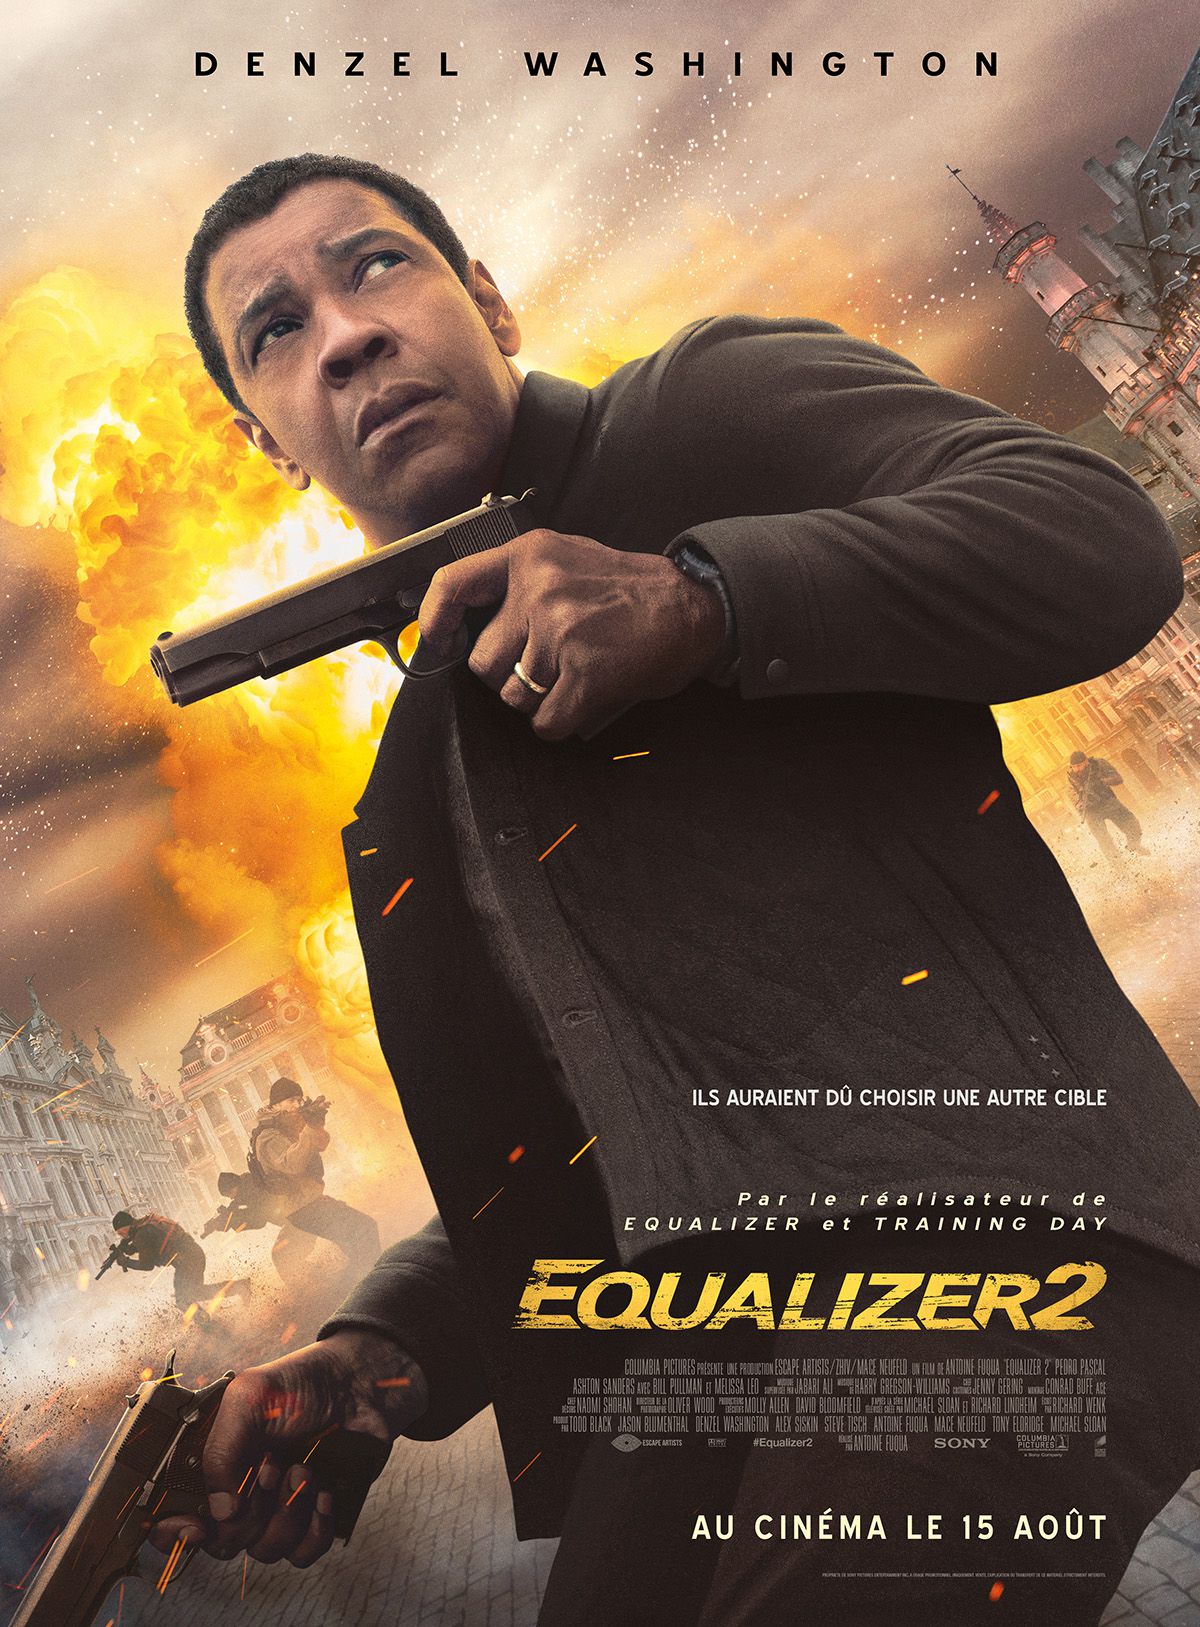 Equalizer 2 - Film (2018) streaming VF gratuit complet